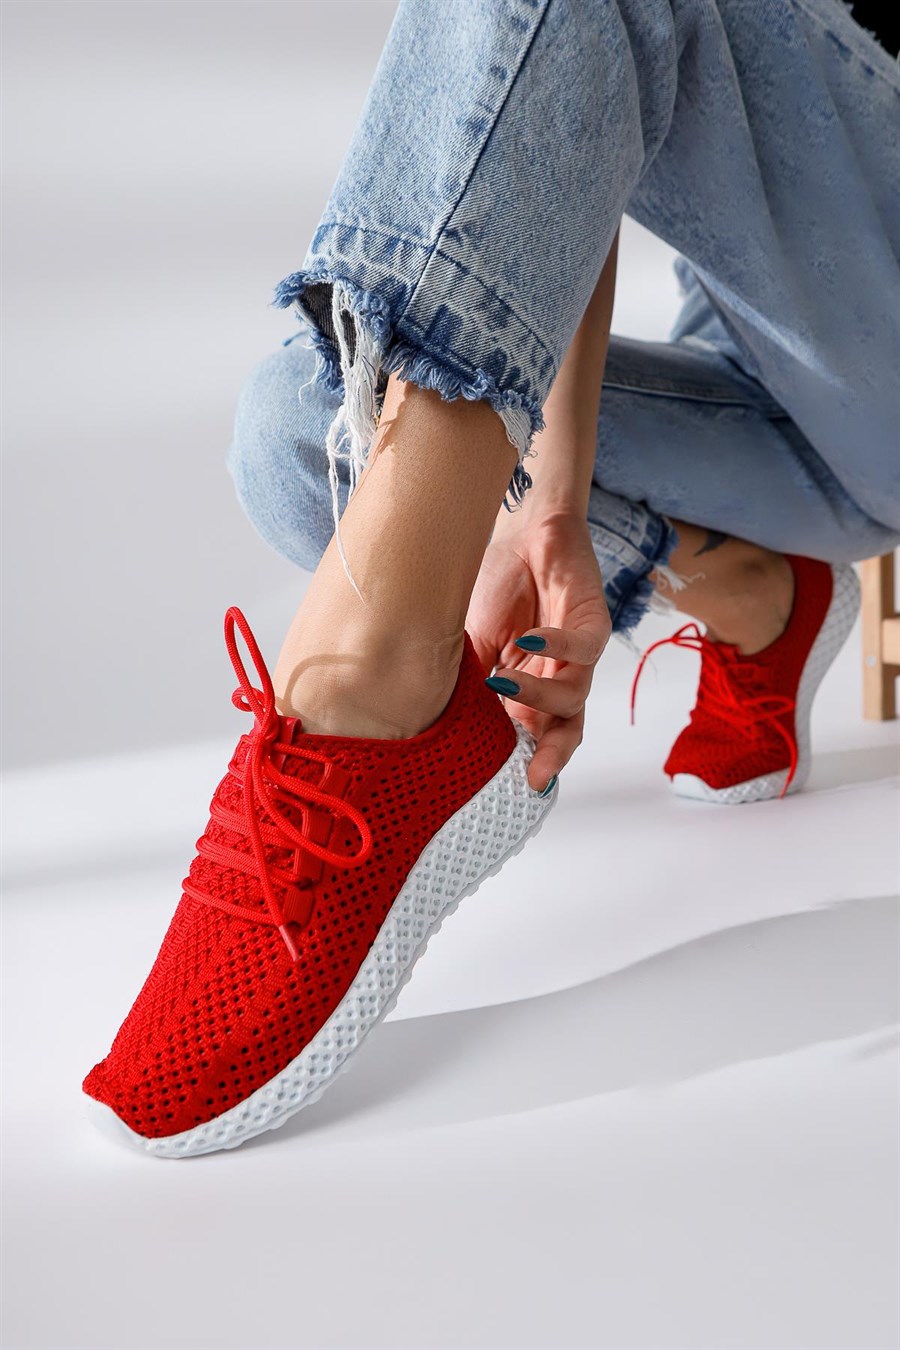 Tasha Kırmızı Örgü Bağcıklı Sneakers